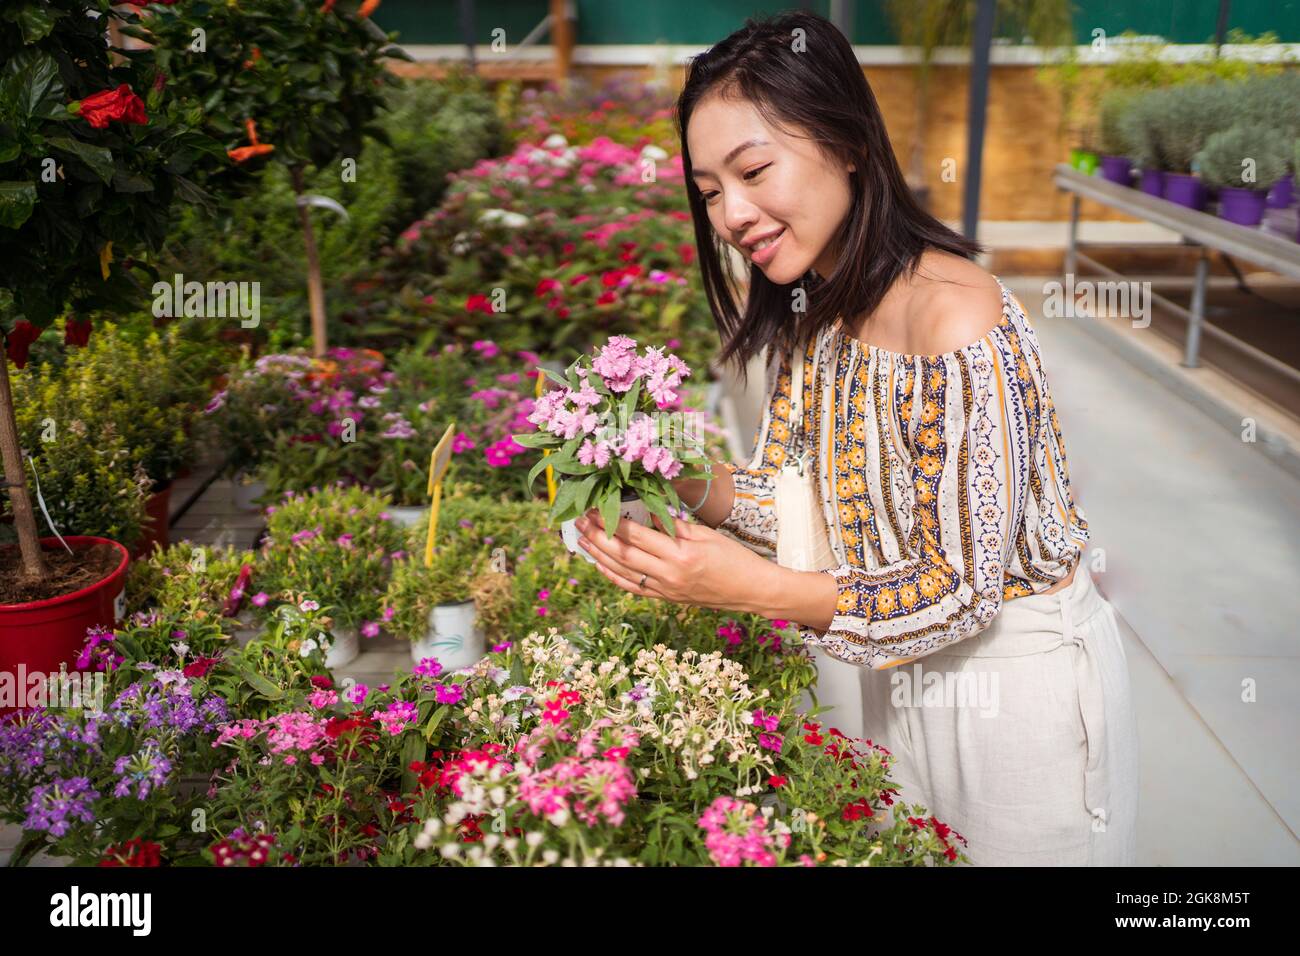 Sincera giovane etnia shopper selezionare fiori in fiore con profumo piacevole in negozio giardino di giorno Foto Stock